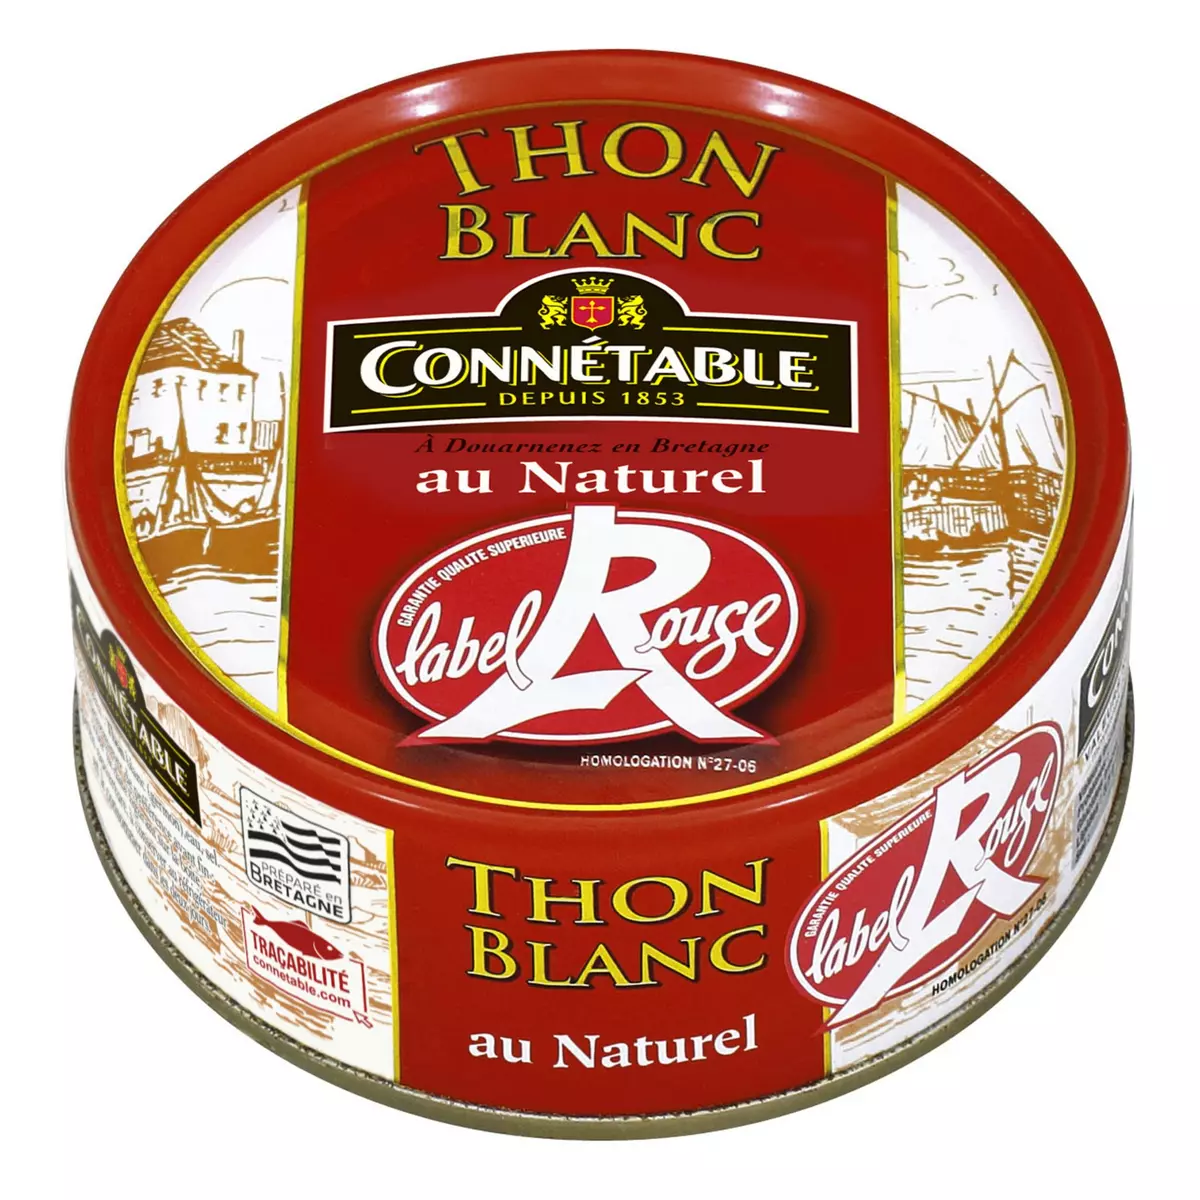 CONNETABLE Thon blanc Label Rouge au naturel 120g